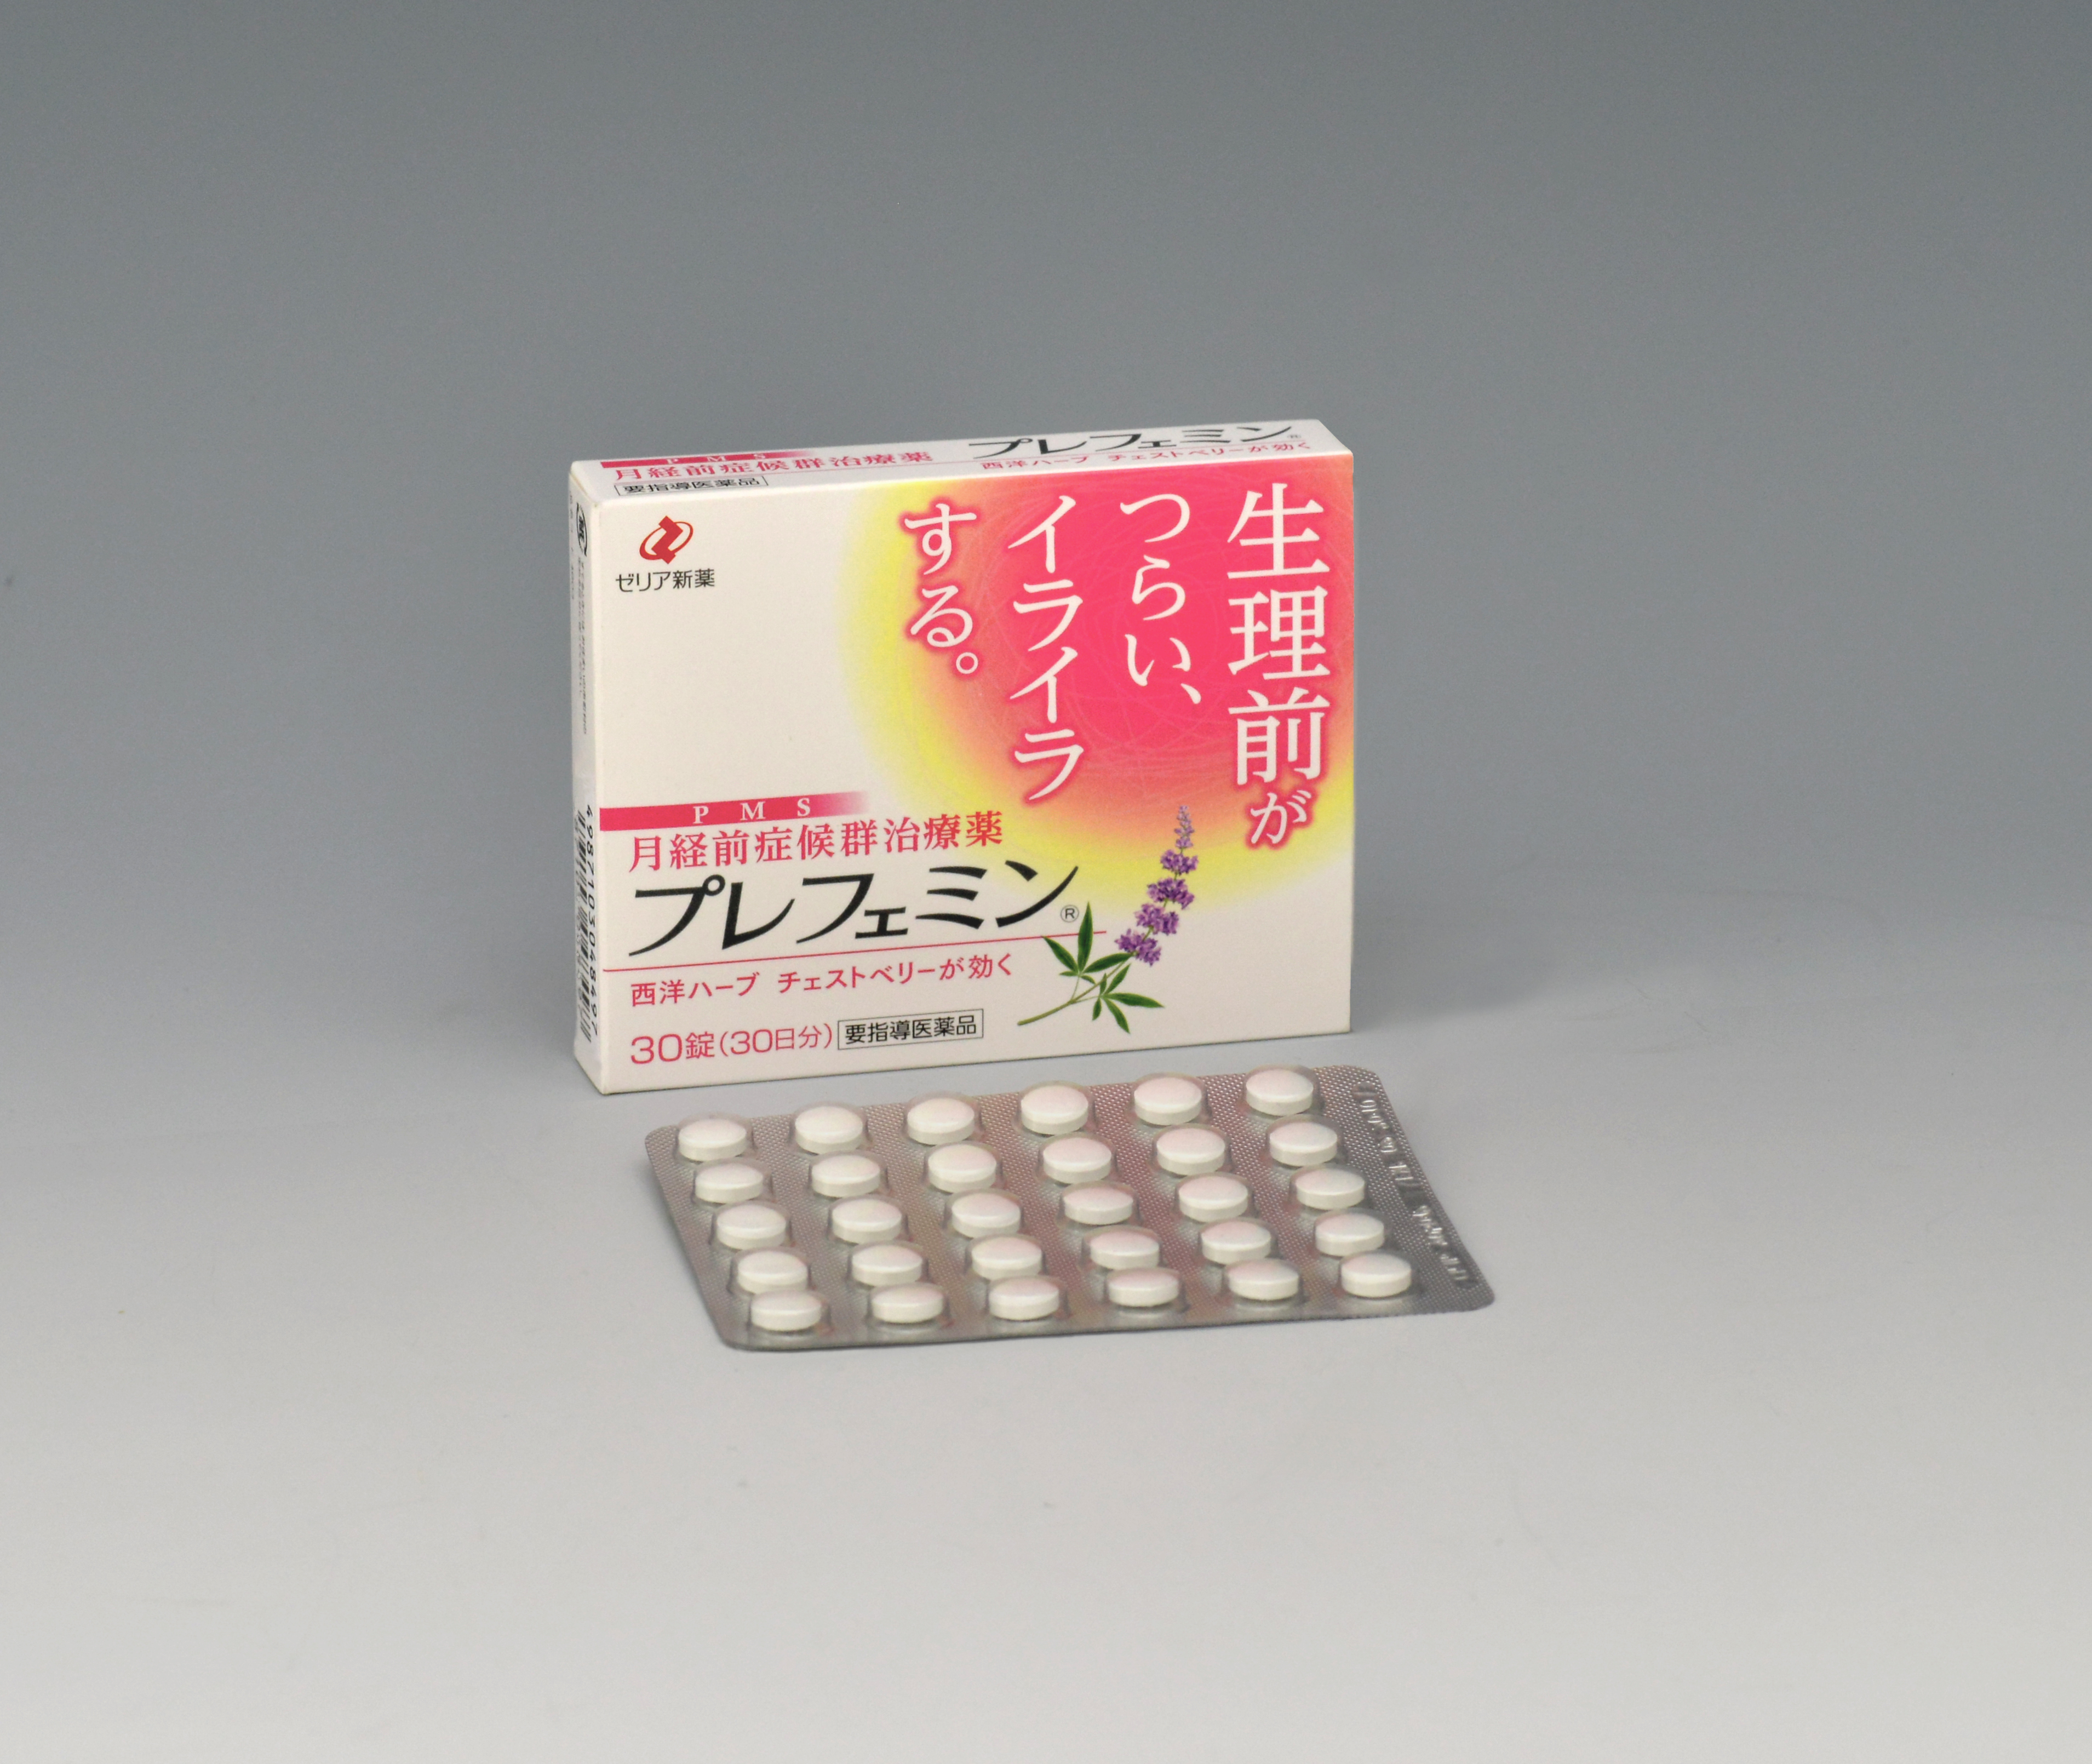 女性の多くが悩む月経前症候群 Pms 日本で唯一の治療薬 プレフェミン 15年5月25日 月 より全国で本格展開 Tvcm放映開始 ゼリア新薬工業株式会社のプレスリリース